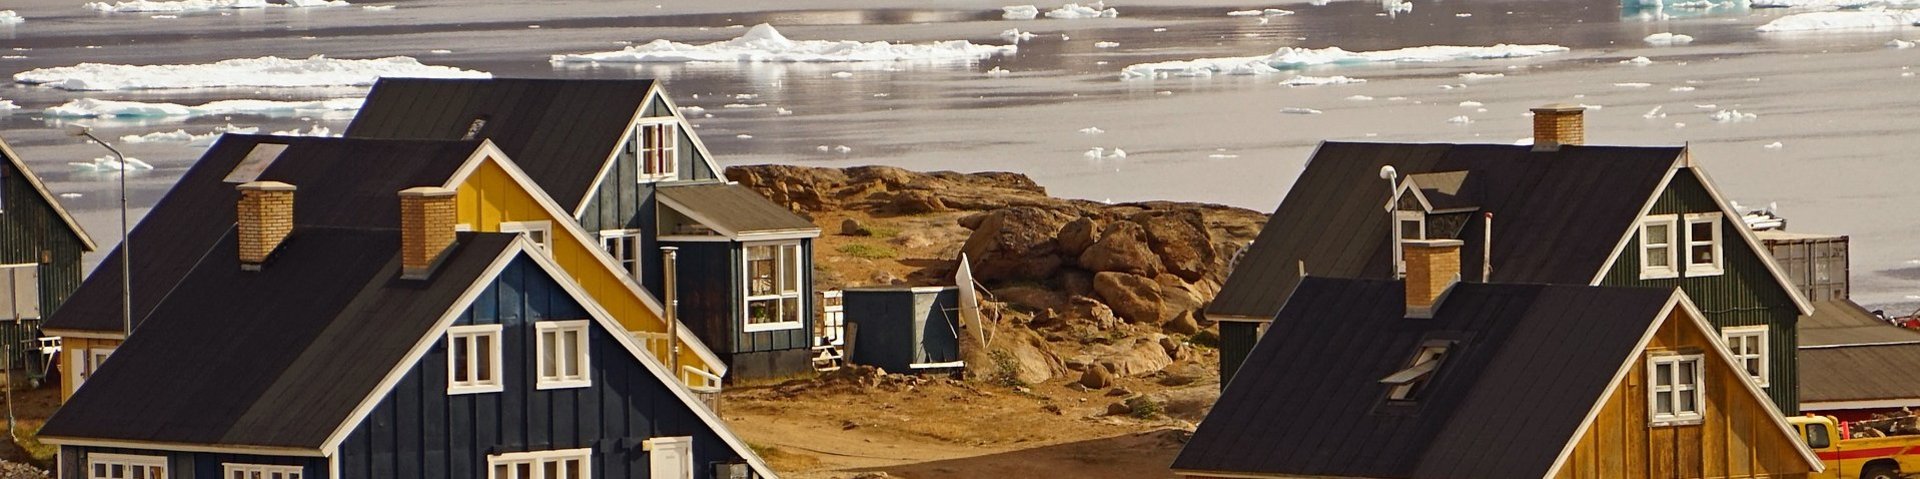 Typische grönlandische Häuser